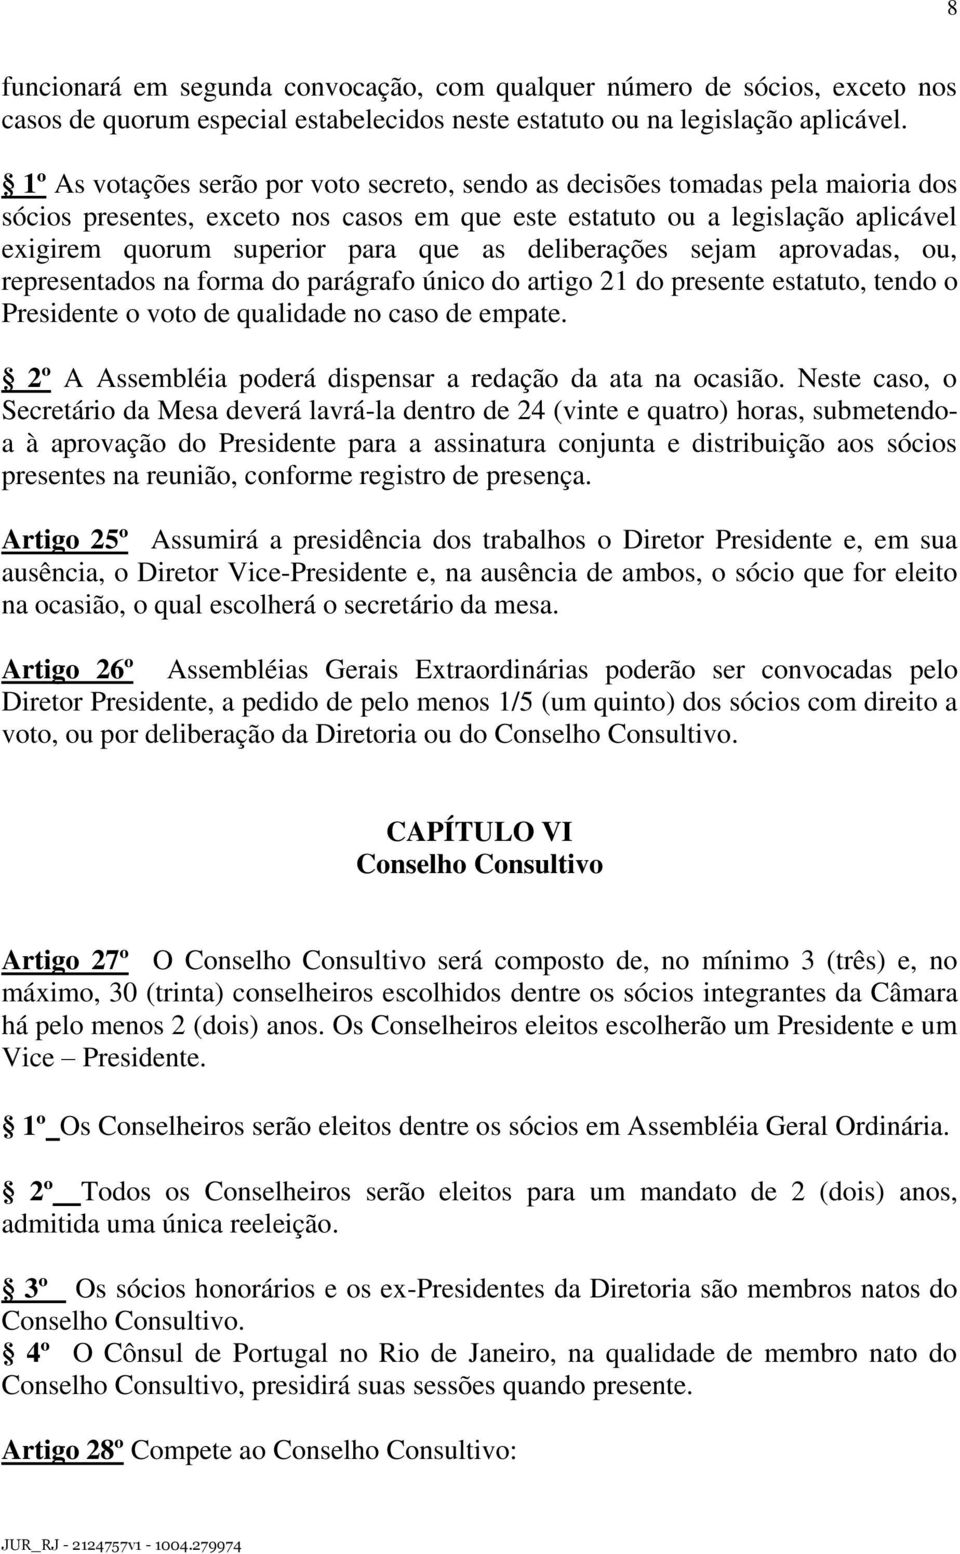 as deliberações sejam aprovadas, ou, representados na forma do parágrafo único do artigo 21 do presente estatuto, tendo o Presidente o voto de qualidade no caso de empate.